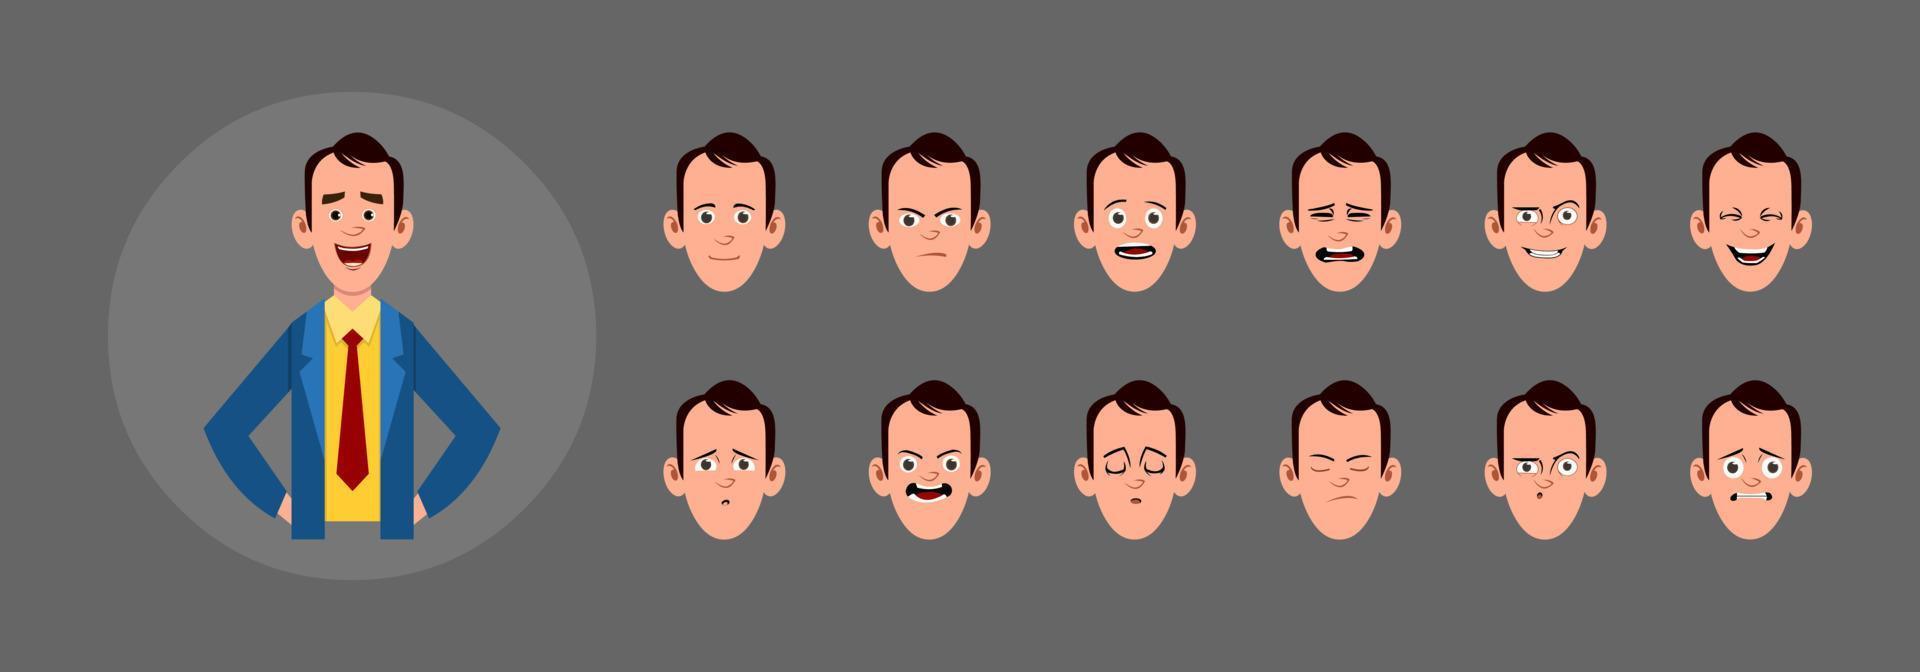 personnes avec une expression faciale différente. différentes émotions faciales pour une animation, un mouvement ou un design personnalisé. vecteur